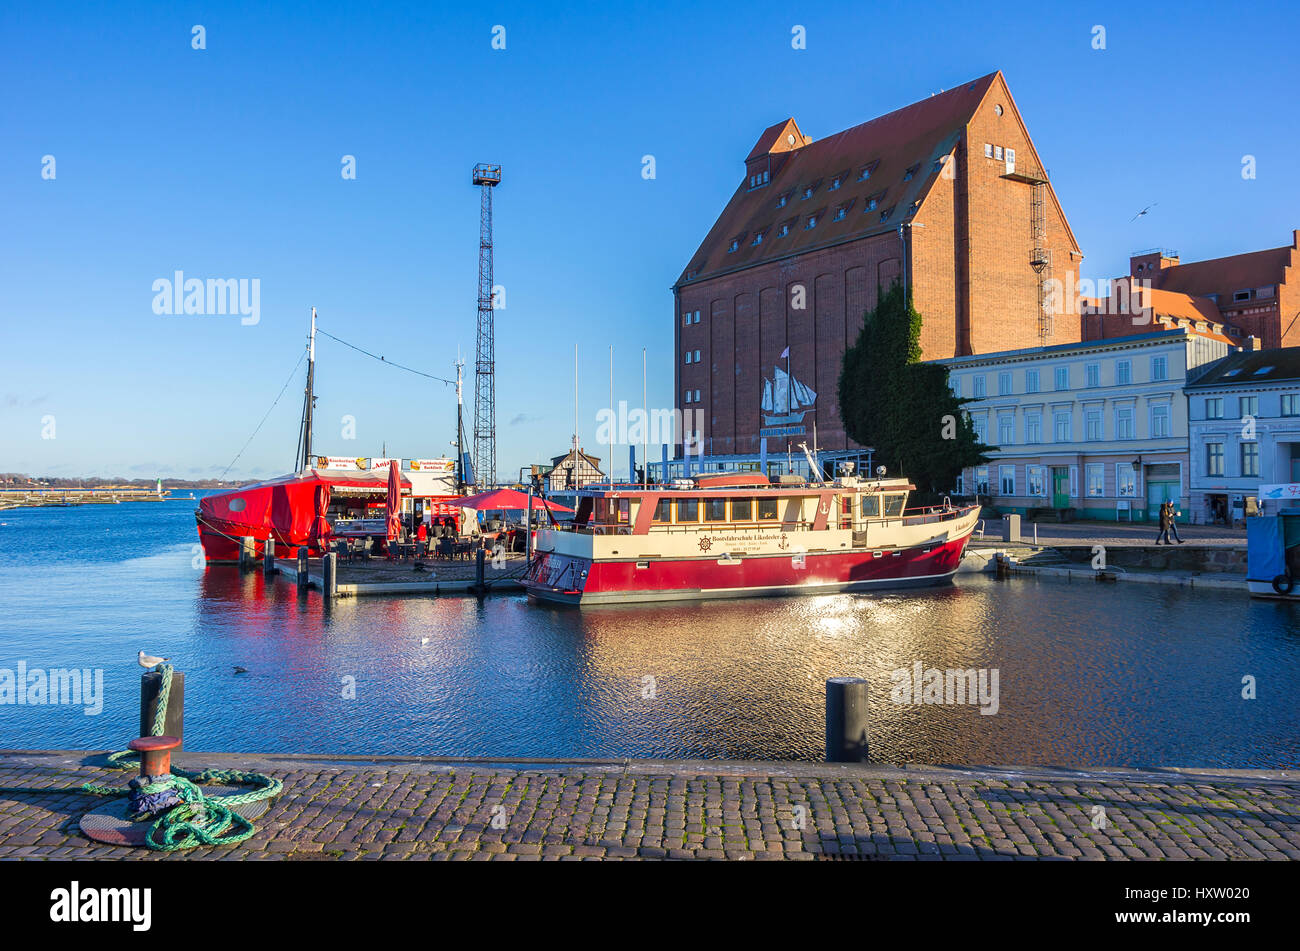 Angelboot/Fischerboot mit Verkaufsstand im Hafen der Hansestadt Stralsund, Mecklenburg-Vorpommern, Deutschland. Stockfoto